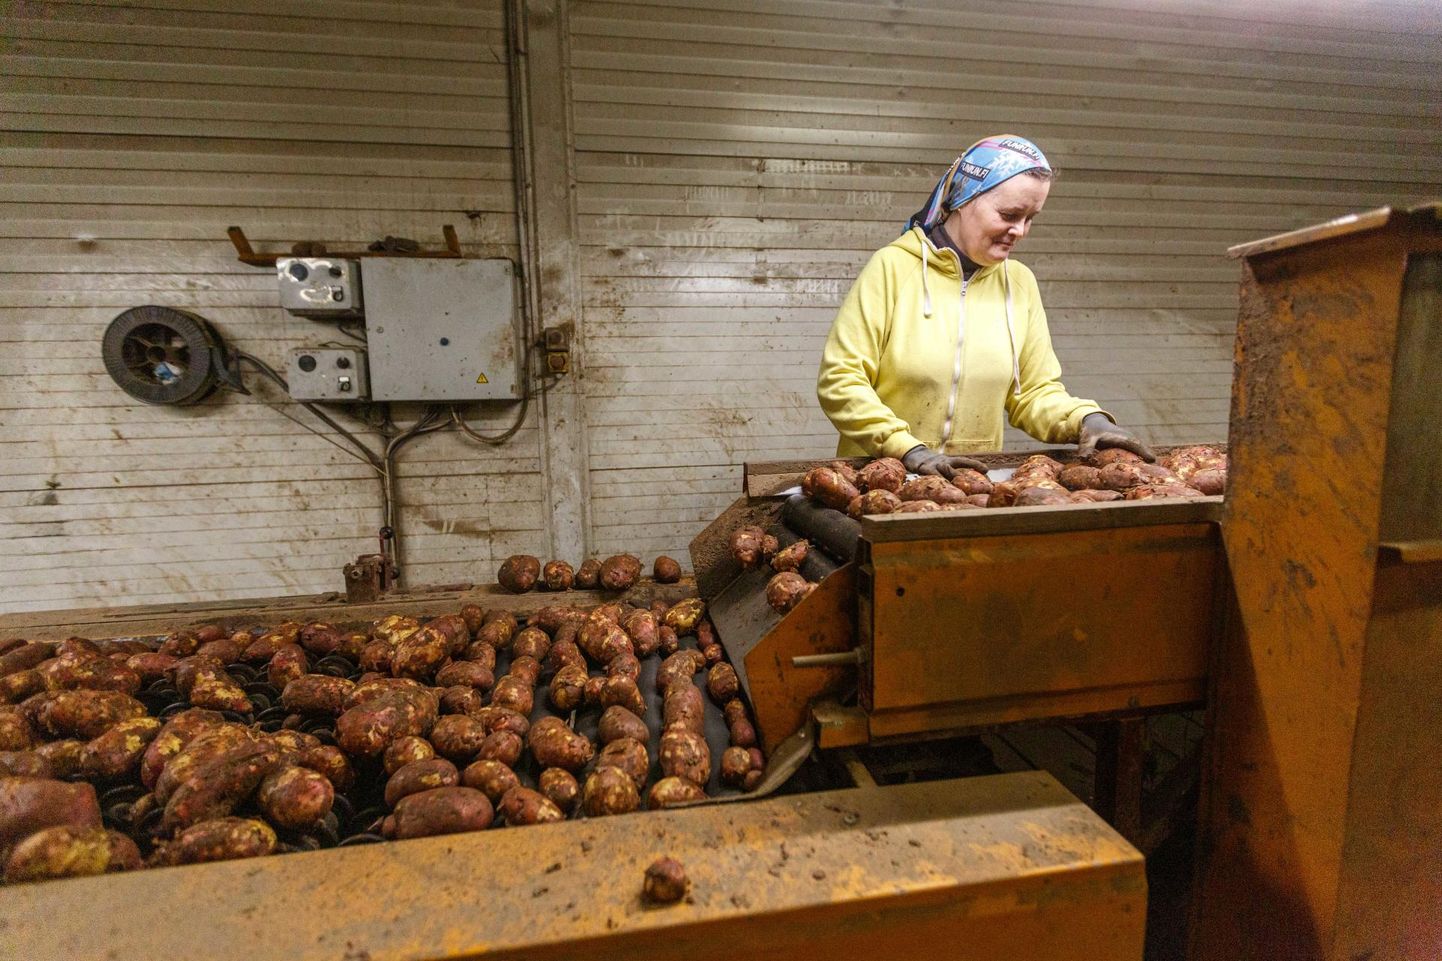 Võru vallas sajal hektaril kartuleid kasvatava Jaagumäe talu saak tundub olevat üle keskmise hea. Tõsi, koristustööd kestavad veel nädalaid ja milleski ei saa enne kindel olla, kui mugulasaak üles võetud ja salve pandud.